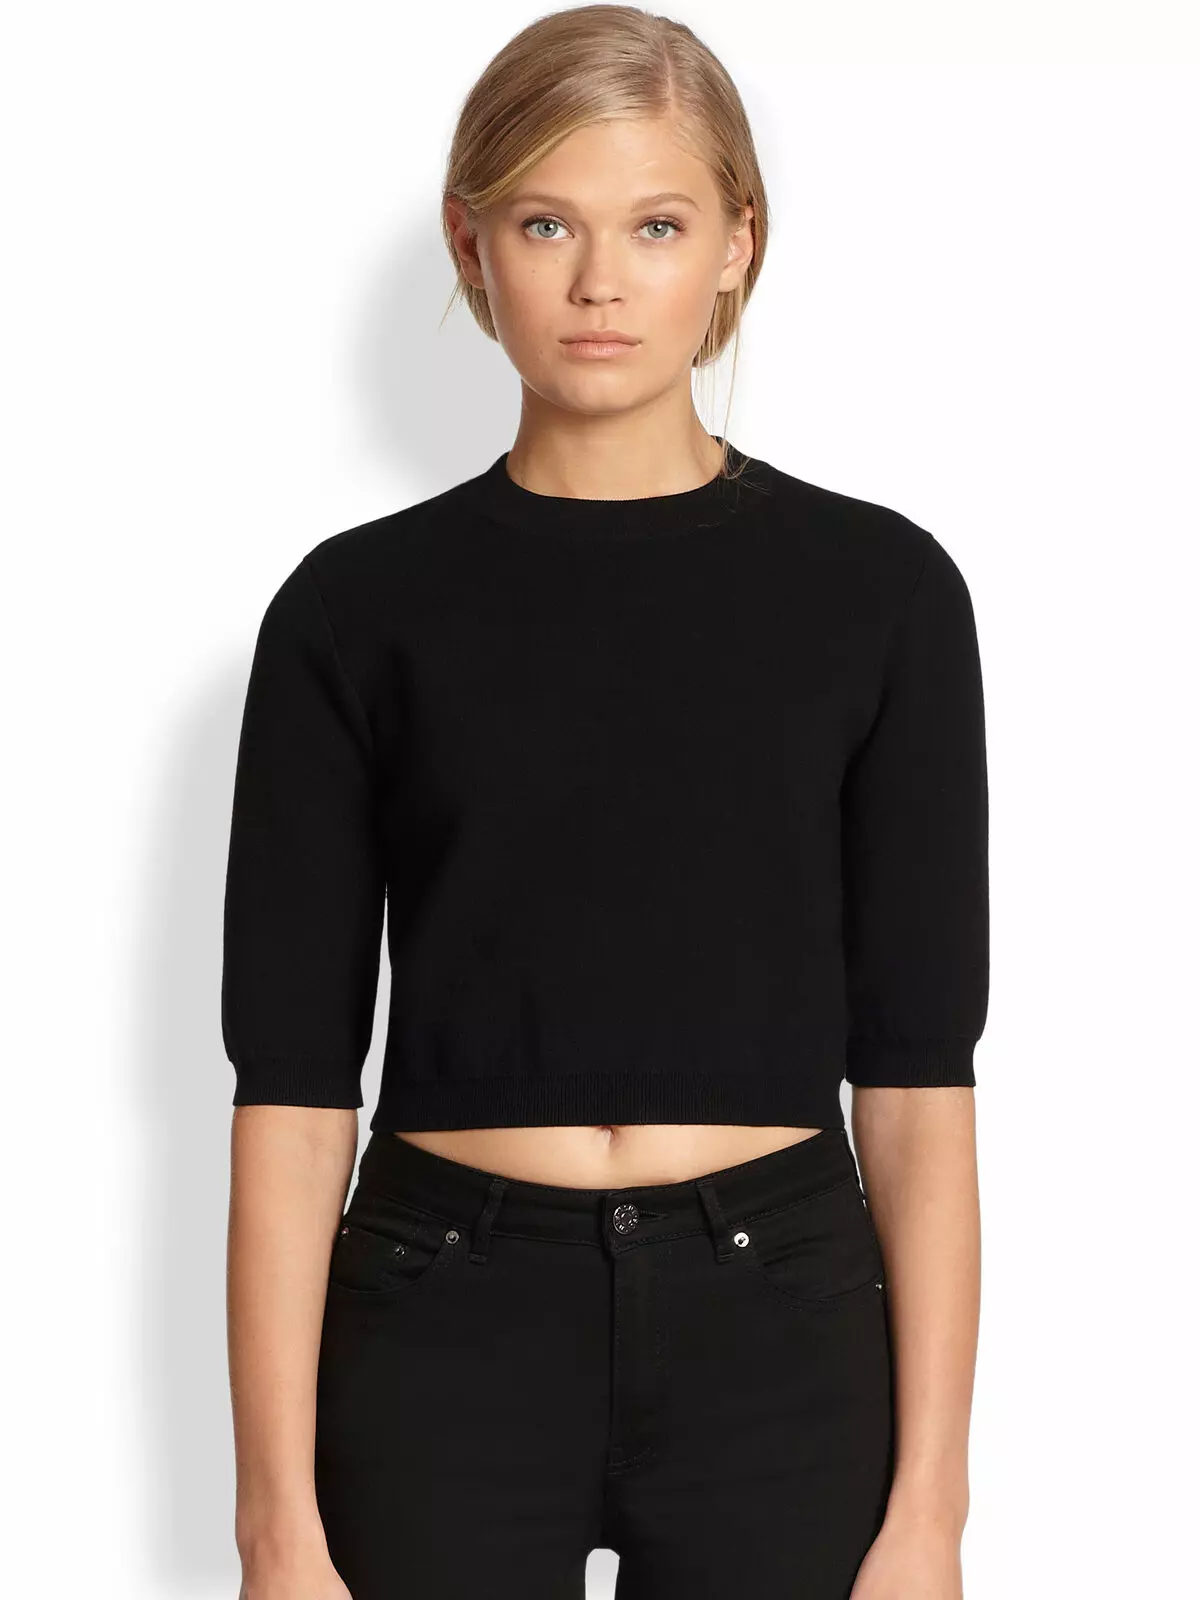 फसल स्वेटर (12 9 फोटो): लंबी आस्तीन, काले, मॉडल 2021 के साथ क्या पहनना है 1026_36